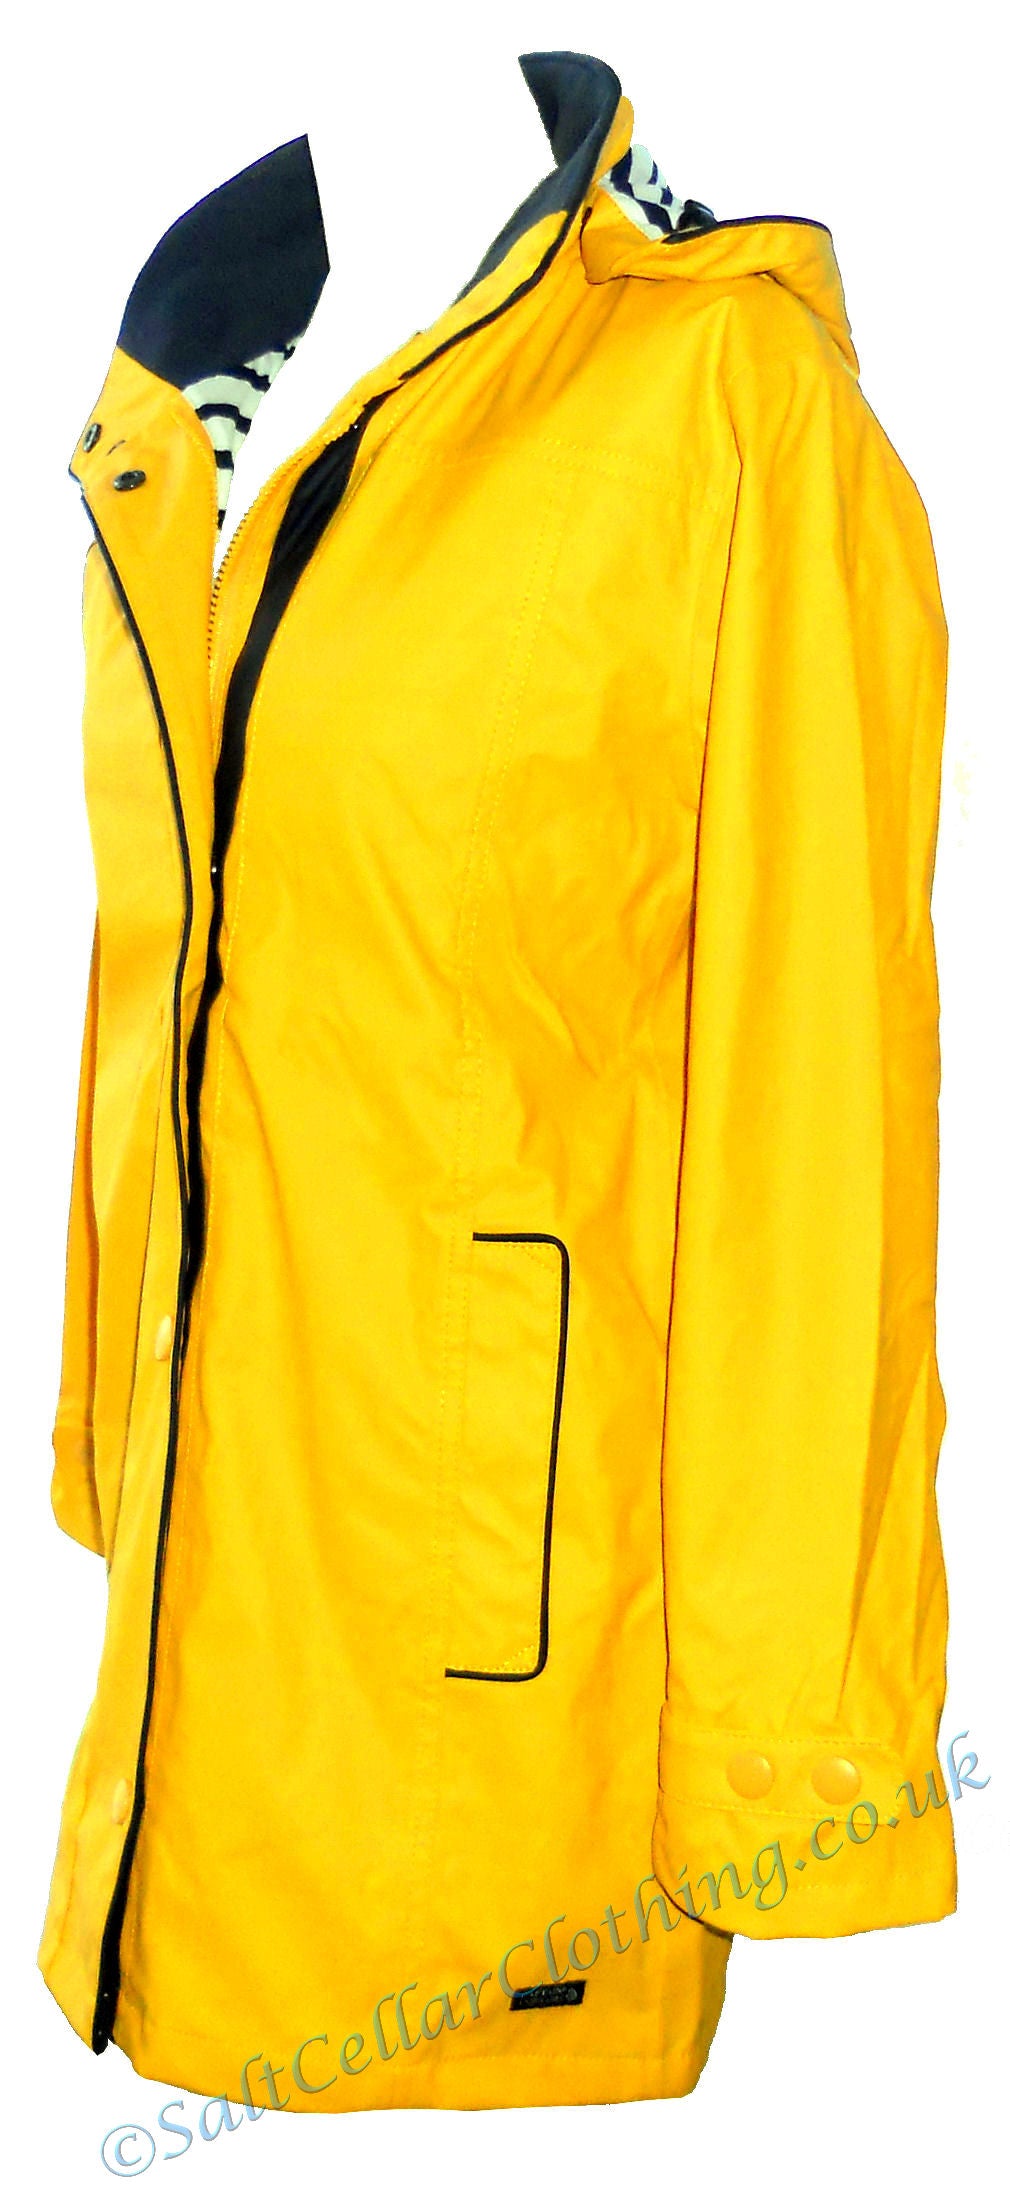 Captain Corsaire women's Regate Ete style stripy lined waterproof rain jacket in Yellow.